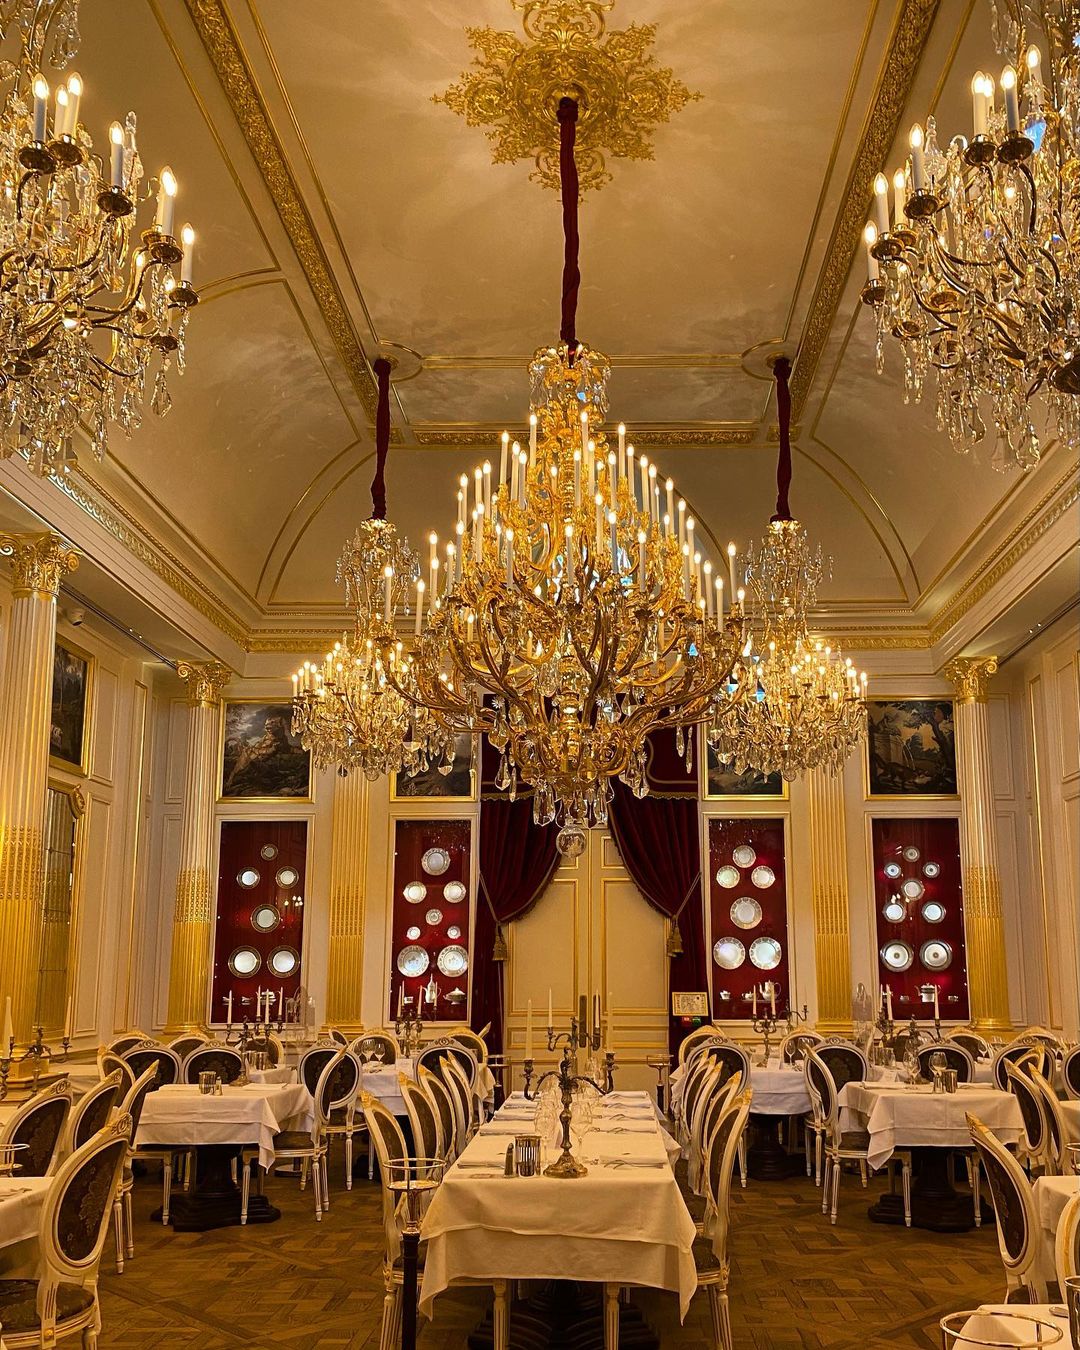 Những chiếc đèn chùm mạ vàng, chân nến bằng bạc và những tấm thảm trang trí từ thế kỷ 17... khiến bữa ăn tại nhà hàng trang trọng hơn hẳn. Ảnh: @fionabjr